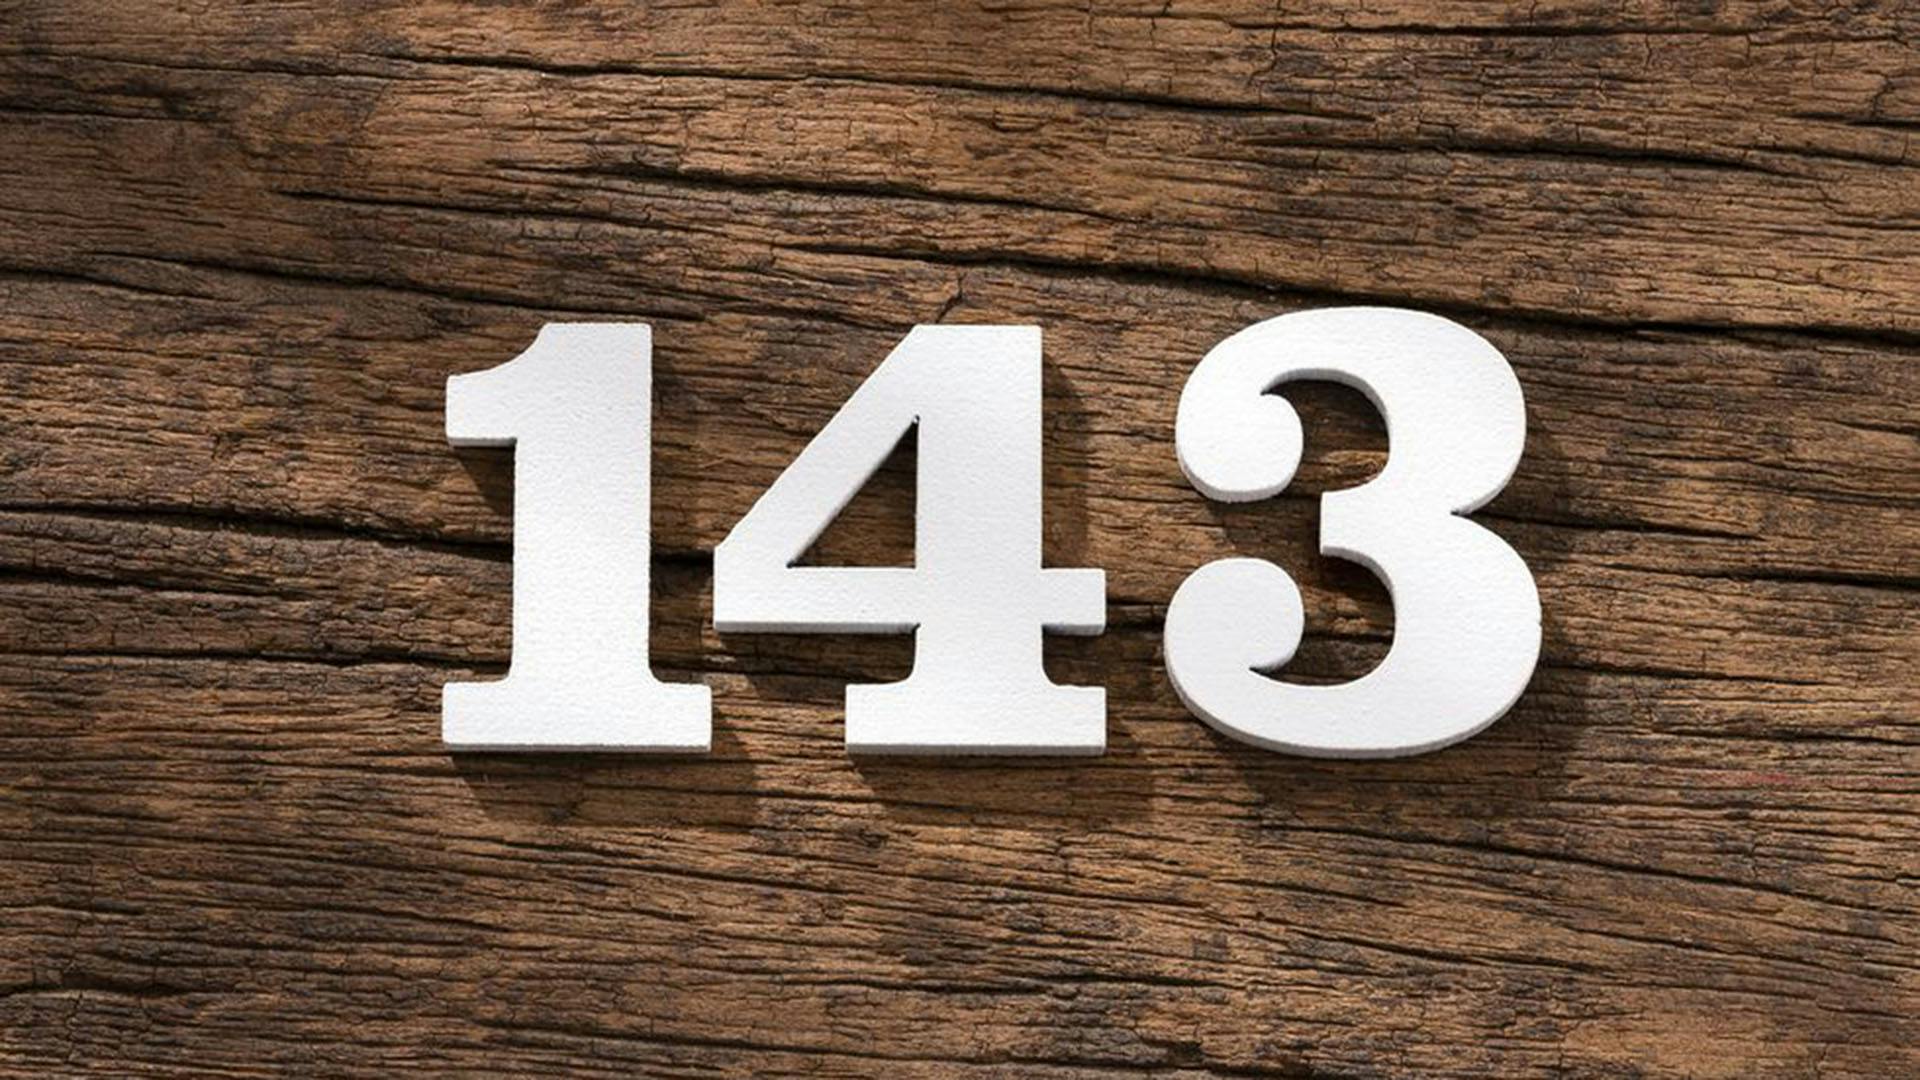 143 é o código que significa I Love You.